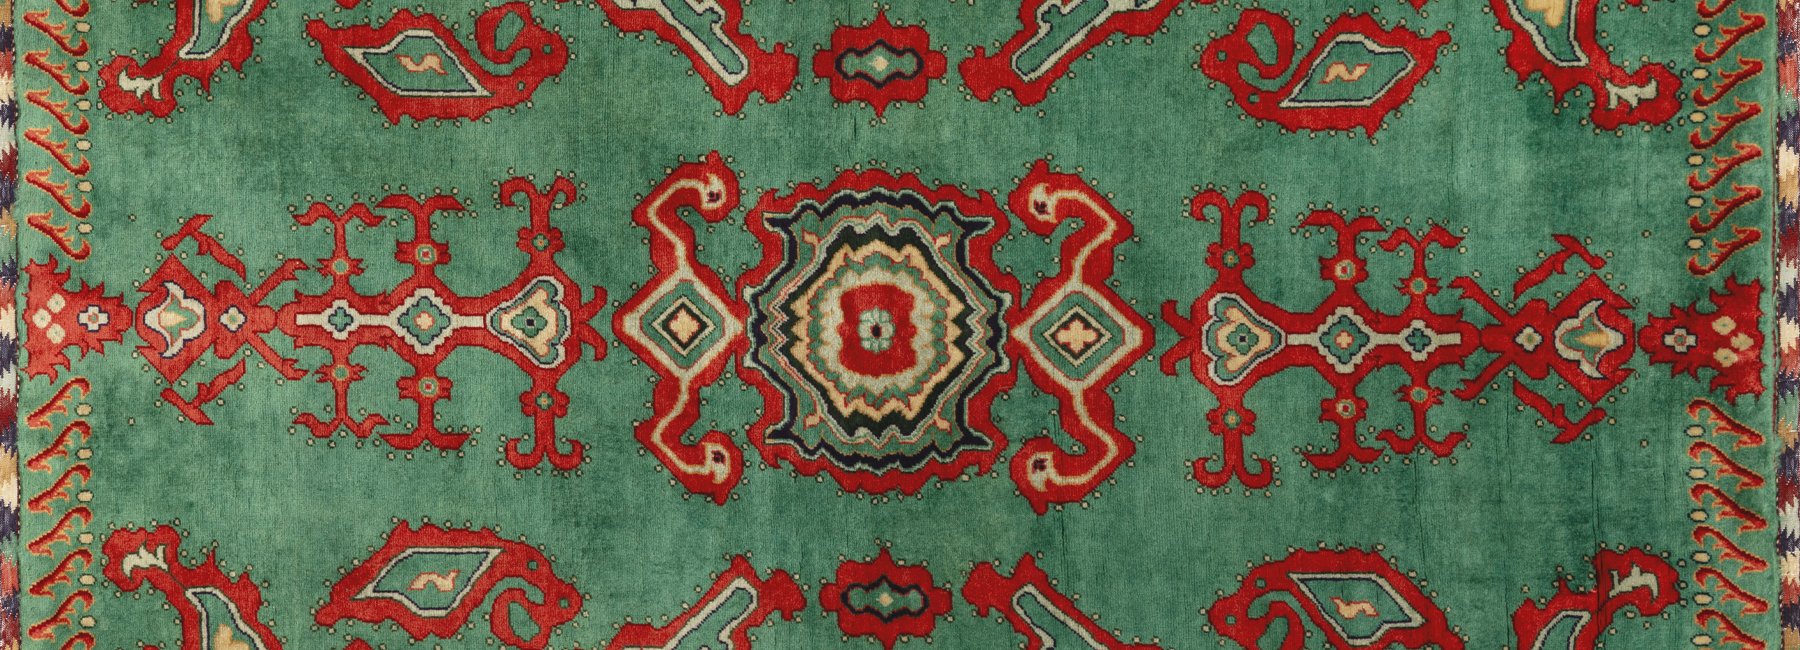 Carpet No. 3 (2022) by Sheer Zazai, handwoven wool carpet. Image courtesy of Shaheer Zazai.